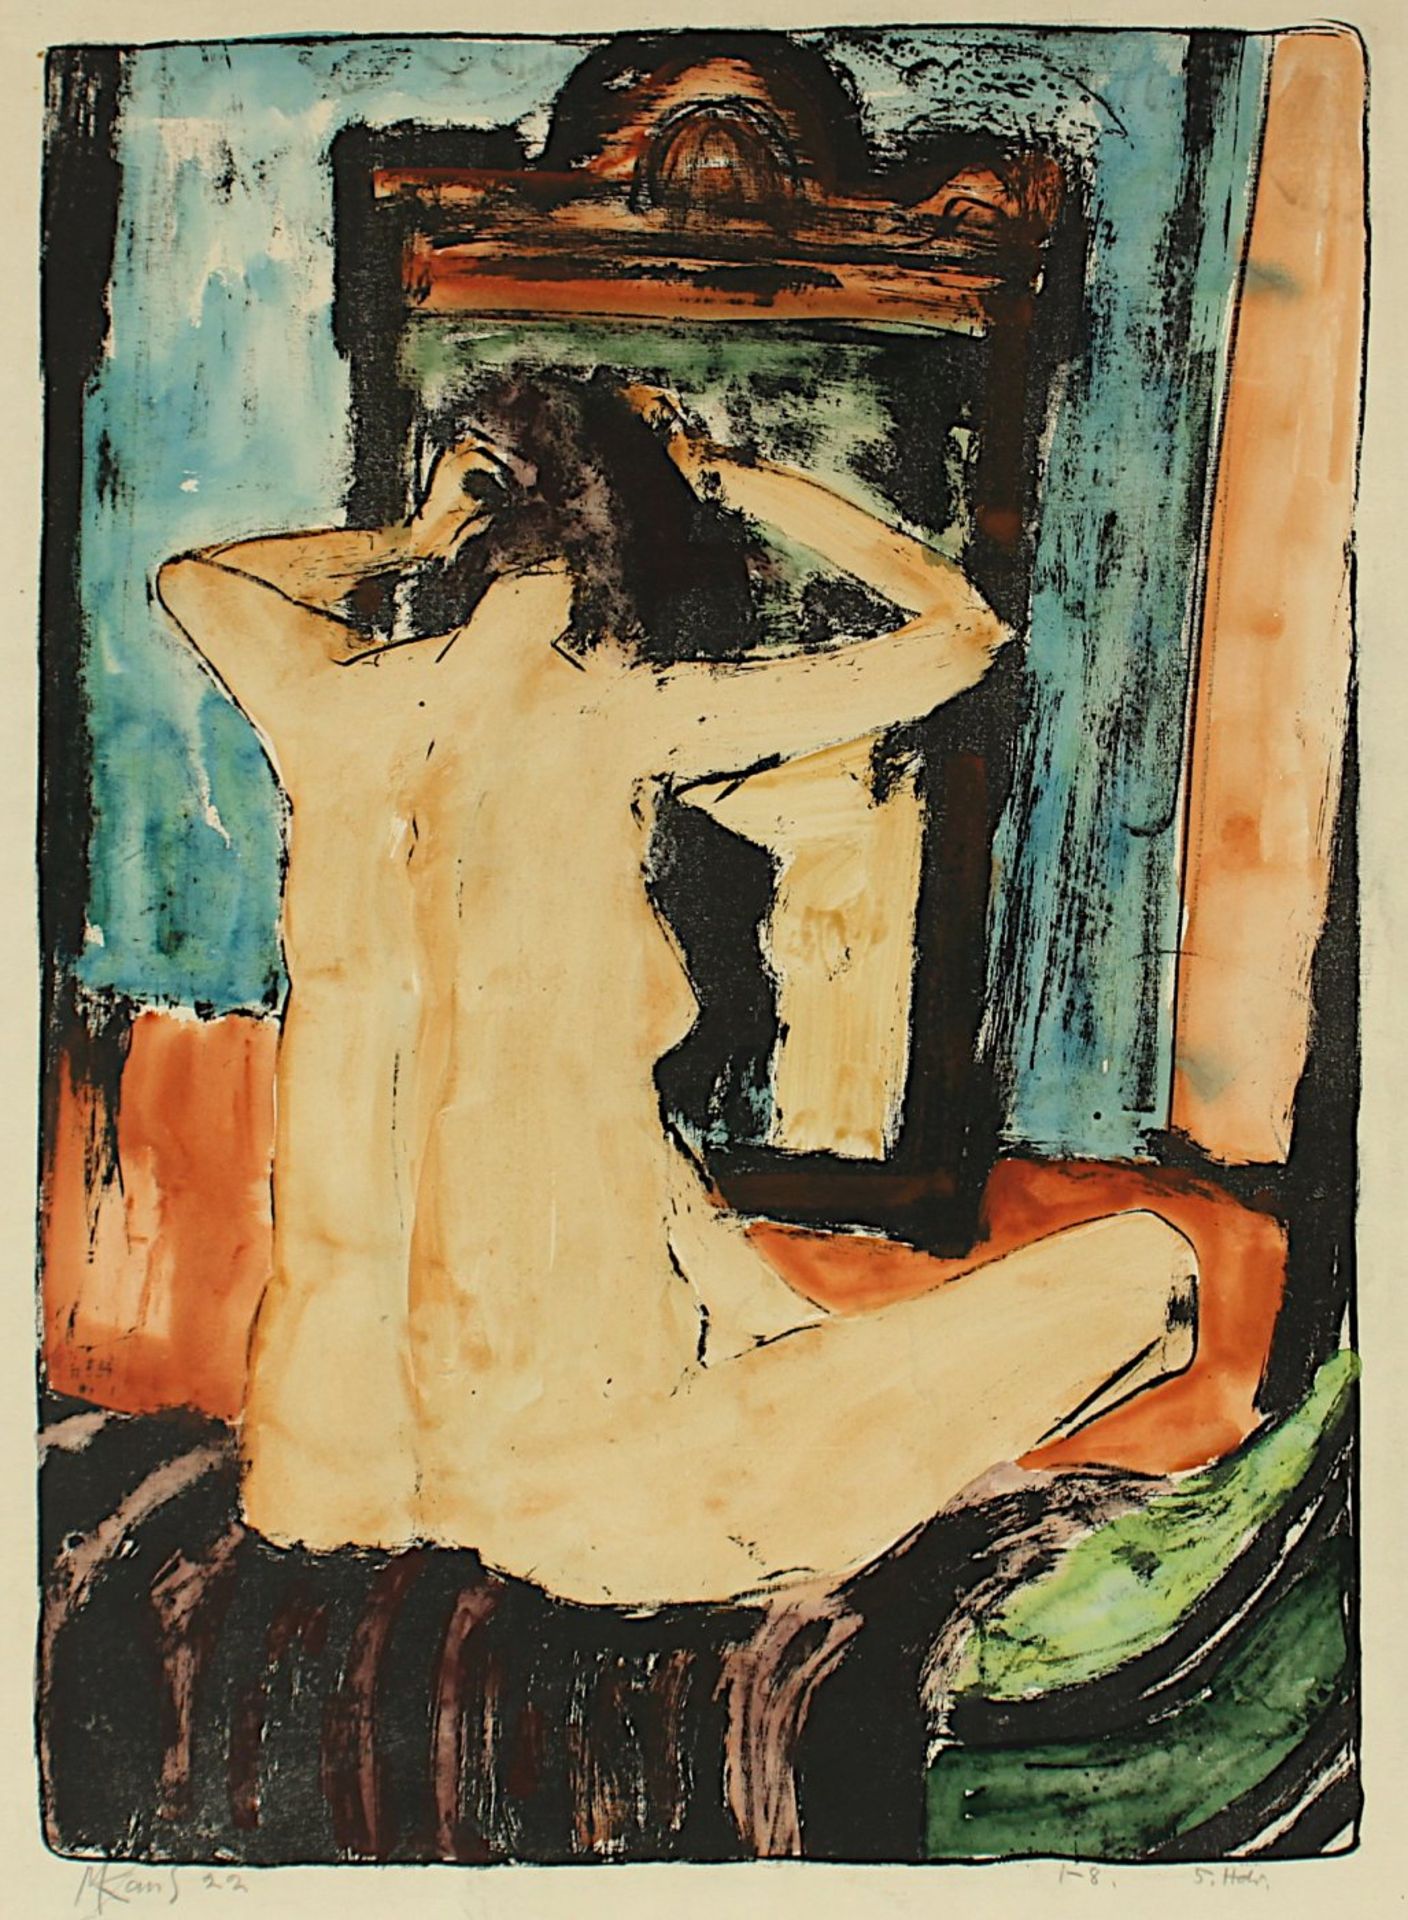 KAUS, Max, "Rückenakt vor einem Spiegel", Original-Lithografie, handkoloriert, 57 x 42, handsigniert